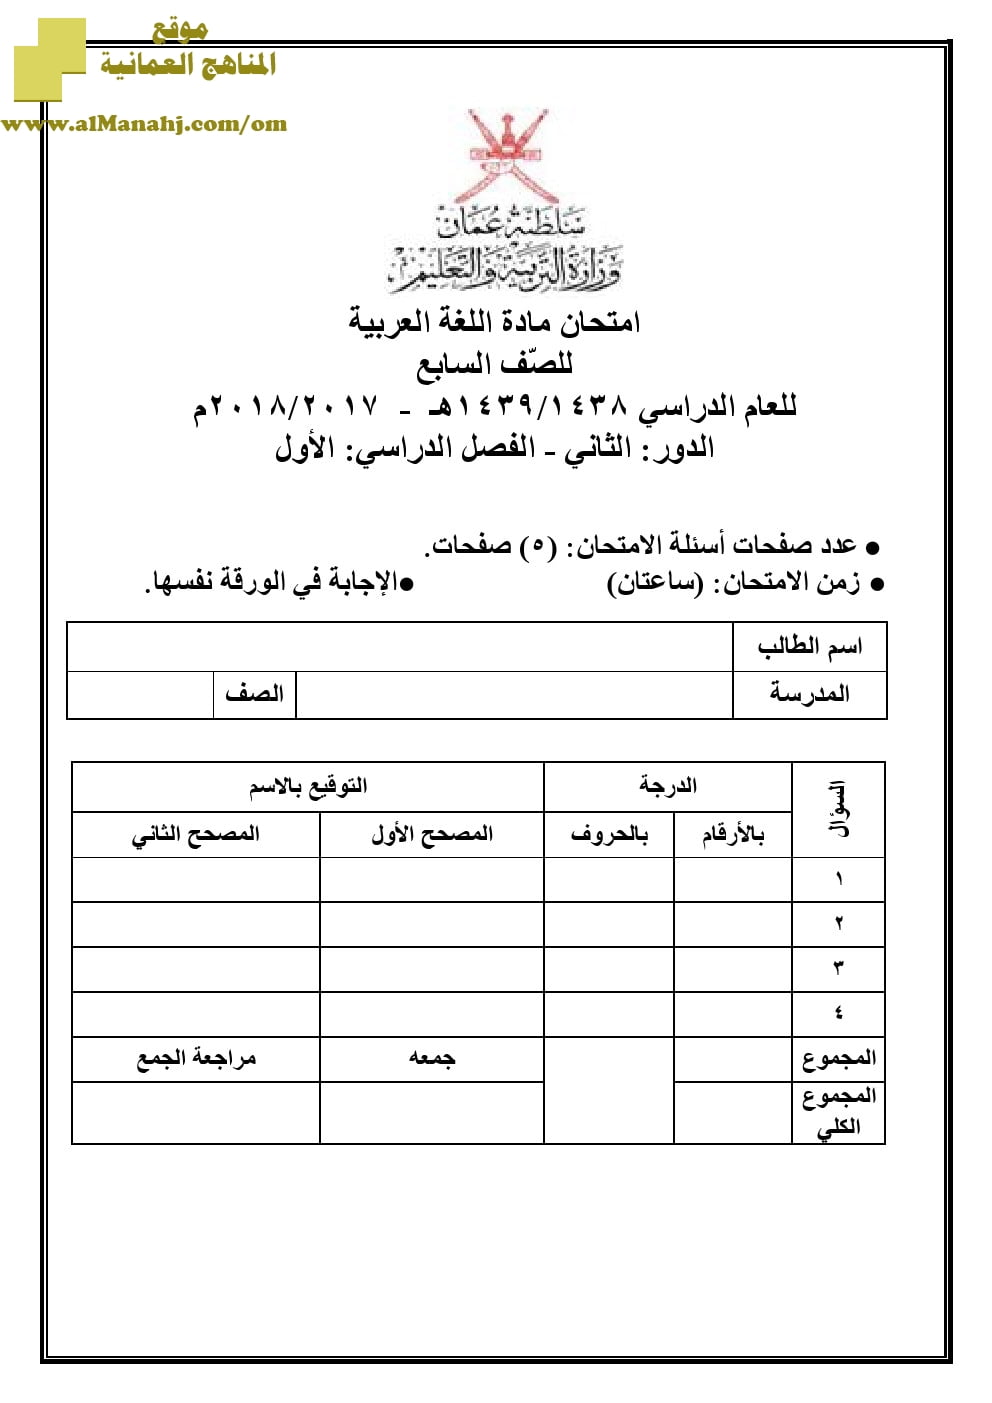 أسئلة وإجابة الامتحان الرسمي للفصل الدراسي الأول الدور الأول والثاني (لغة عربية) السابع